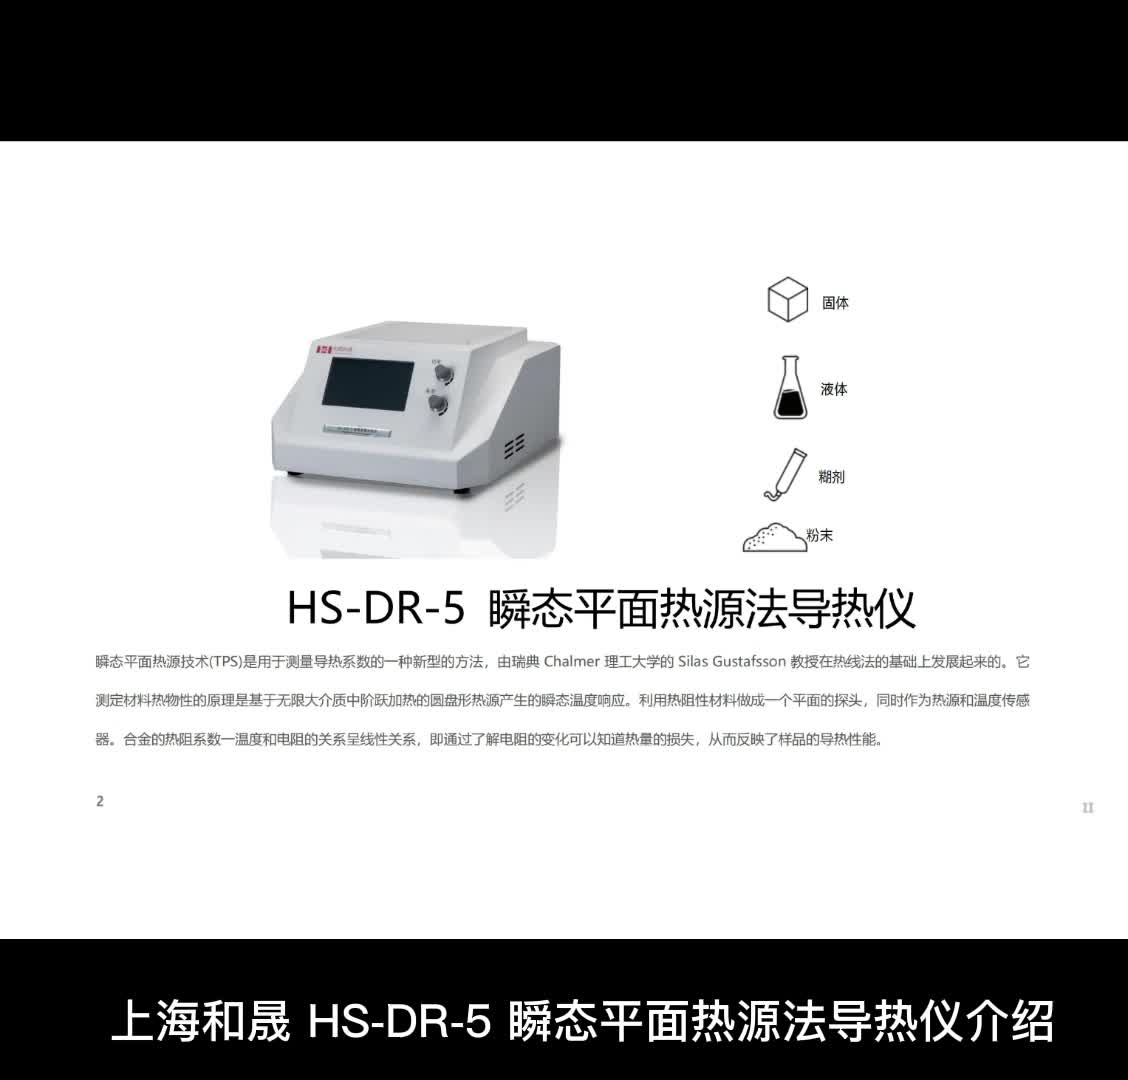 上海和晟 HS-DR-5 瞬态平面热源法导热仪介绍